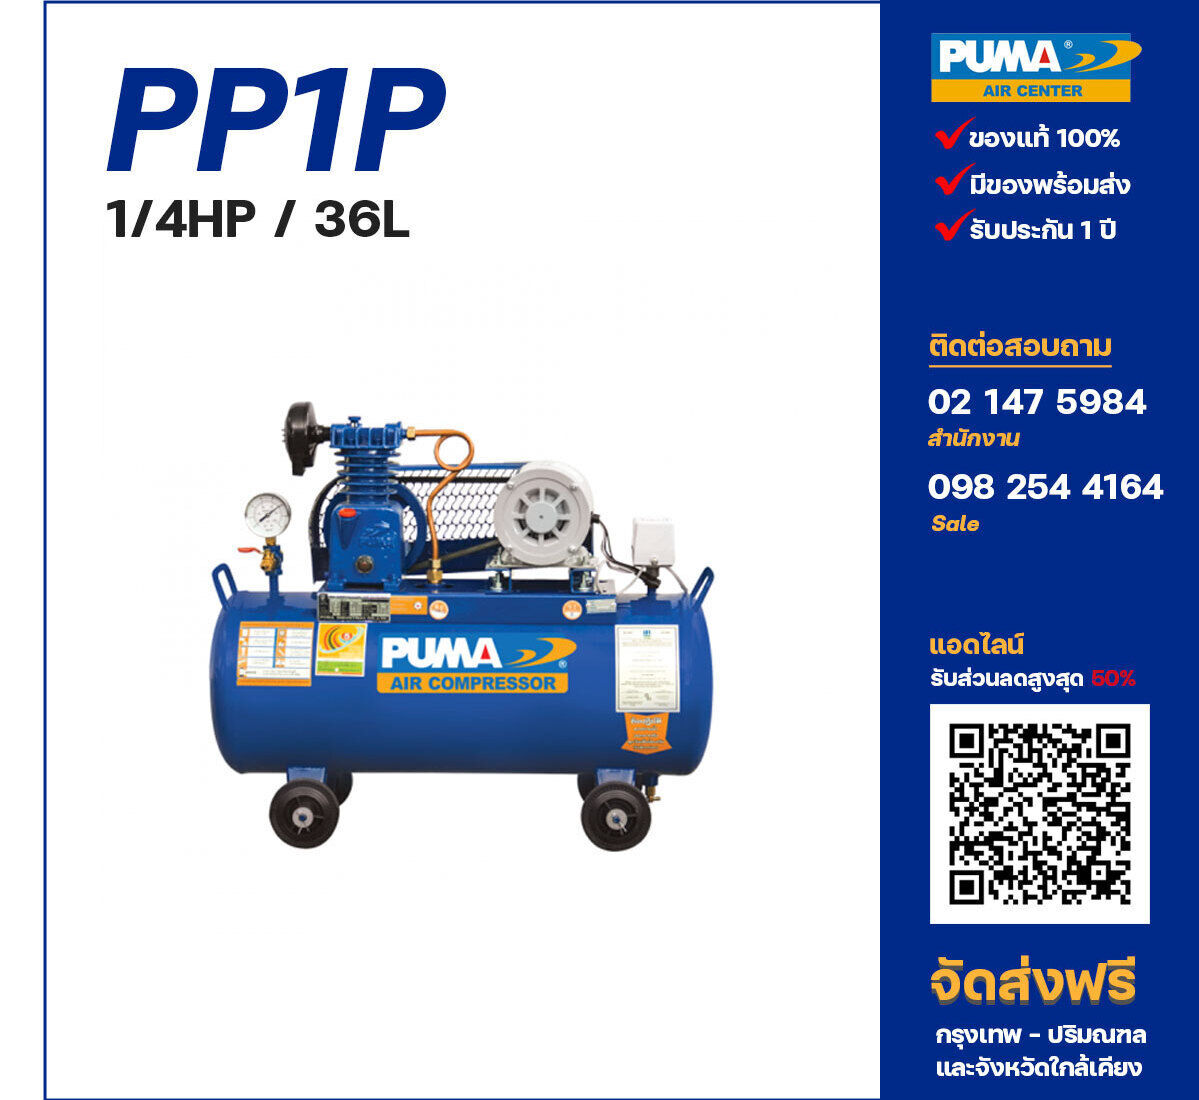 ปั๊มลมพูม่า PUMA PP1-PPM220V ปั๊มลมลูกสูบ ขนาด 1 สูบ 1/4 แรงม้า 36 ลิตร PUMA พร้อมมอเตอร์ PUMA ไฟ 220V ส่งฟรี กรุงเทพฯ-ปริมณฑล รับประกัน 1 ปี